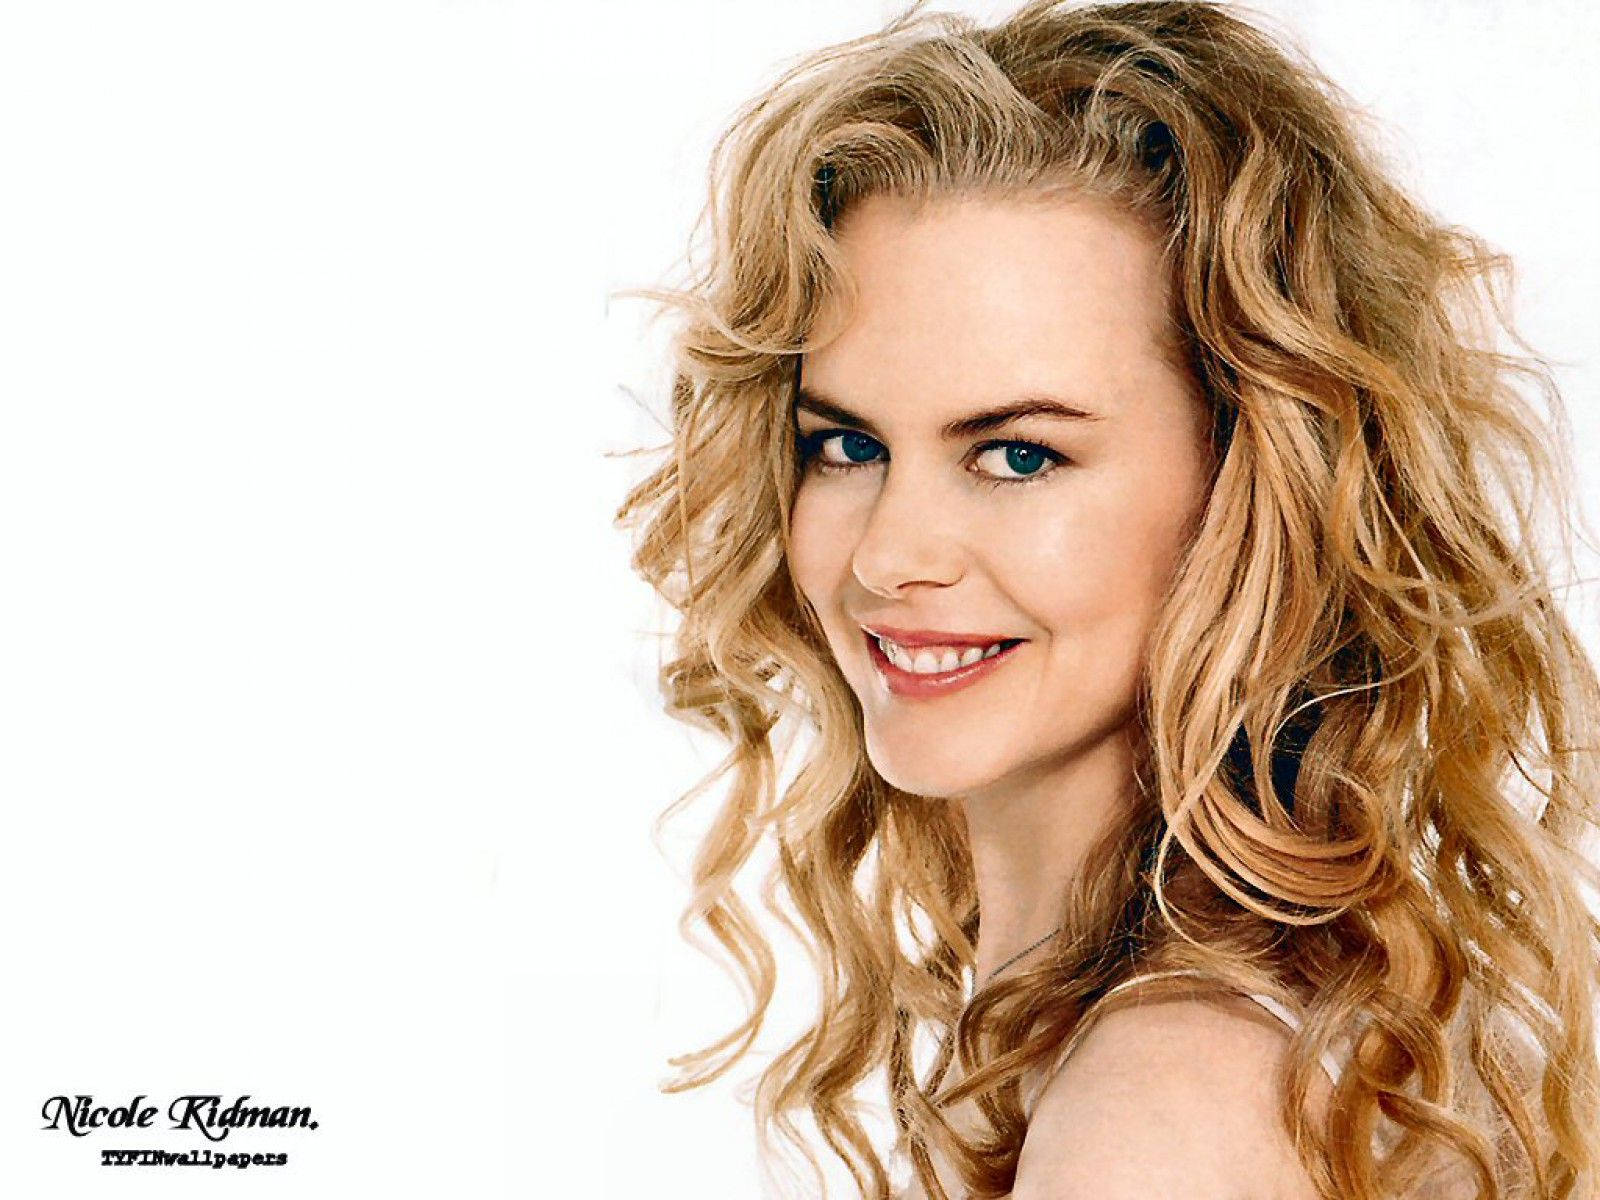 Nicole Kidman - An Award Winning Actress Background